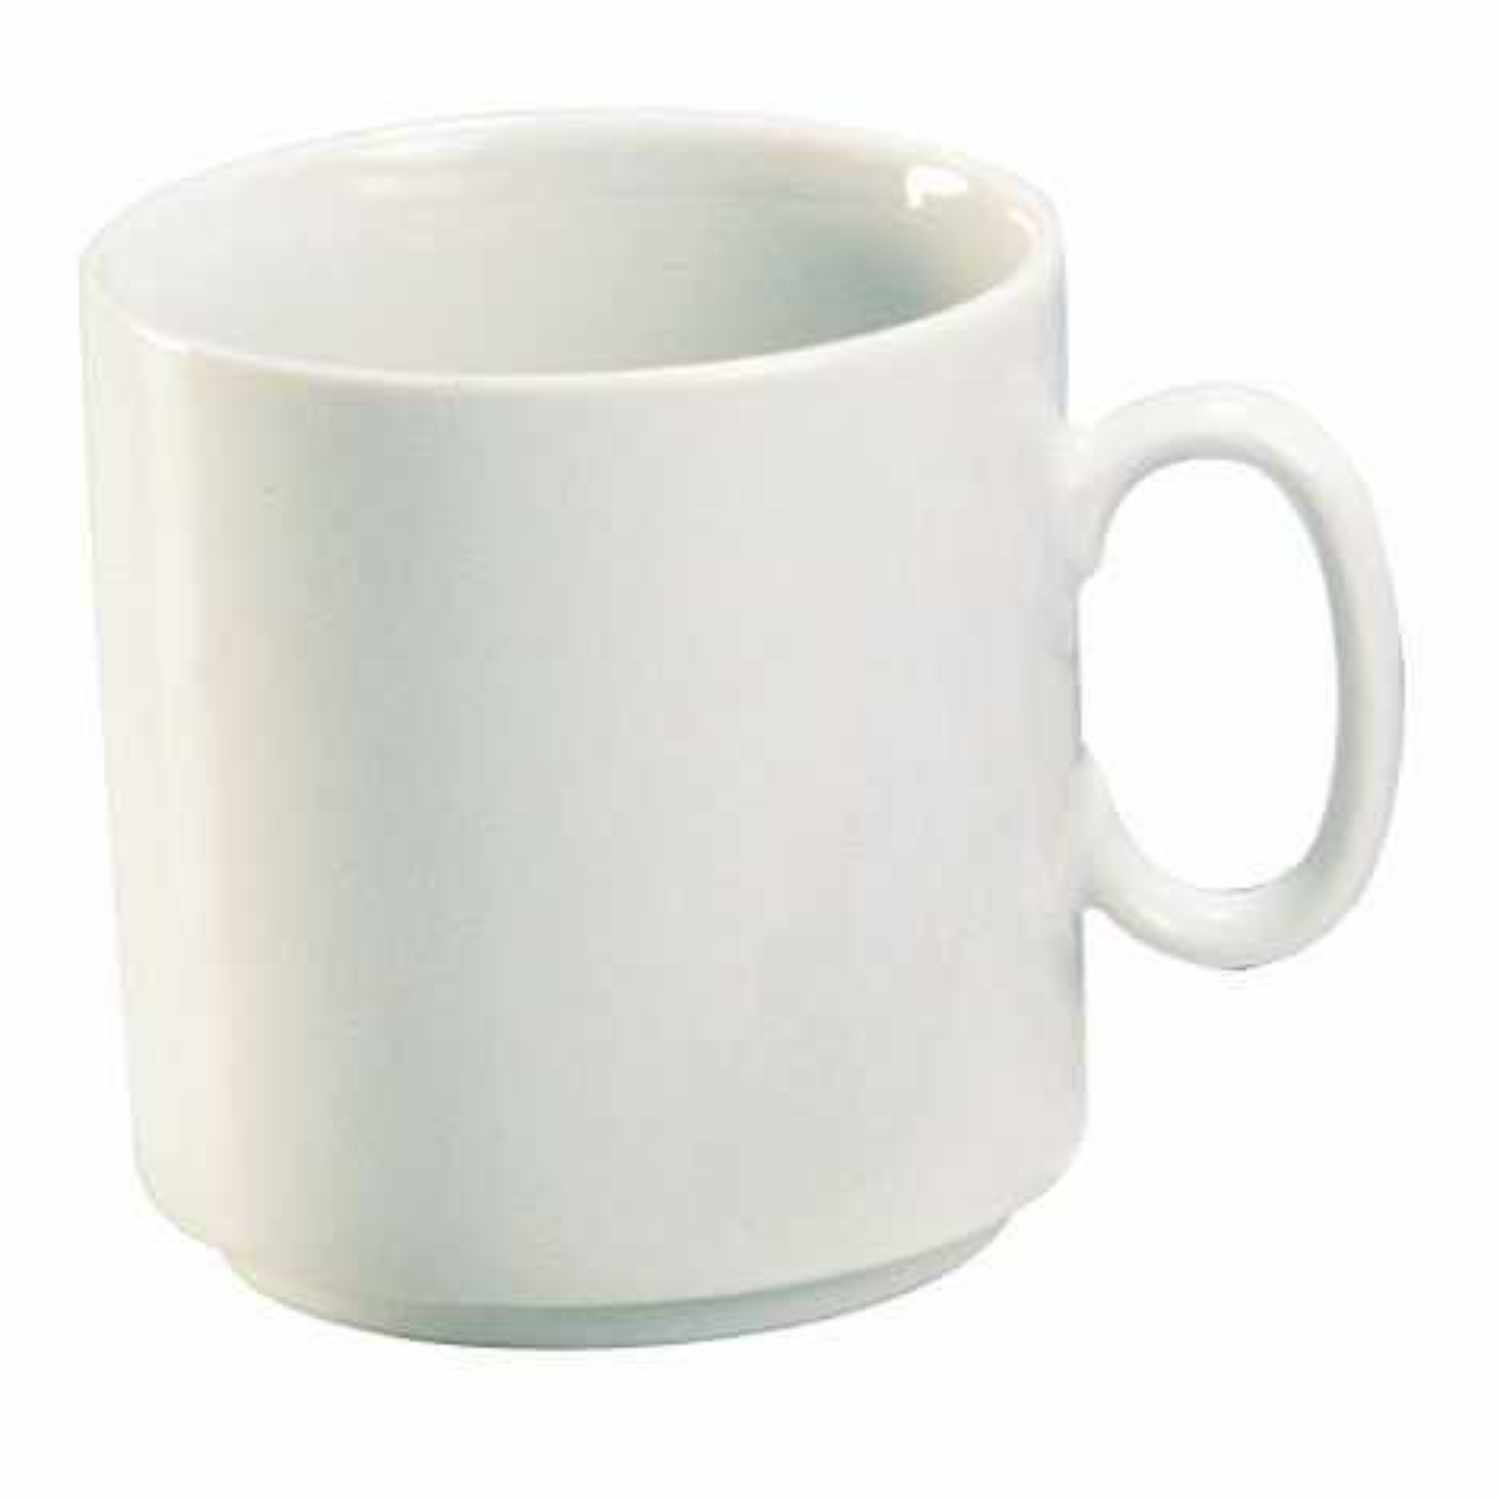 Porzellan-Tasse weiß